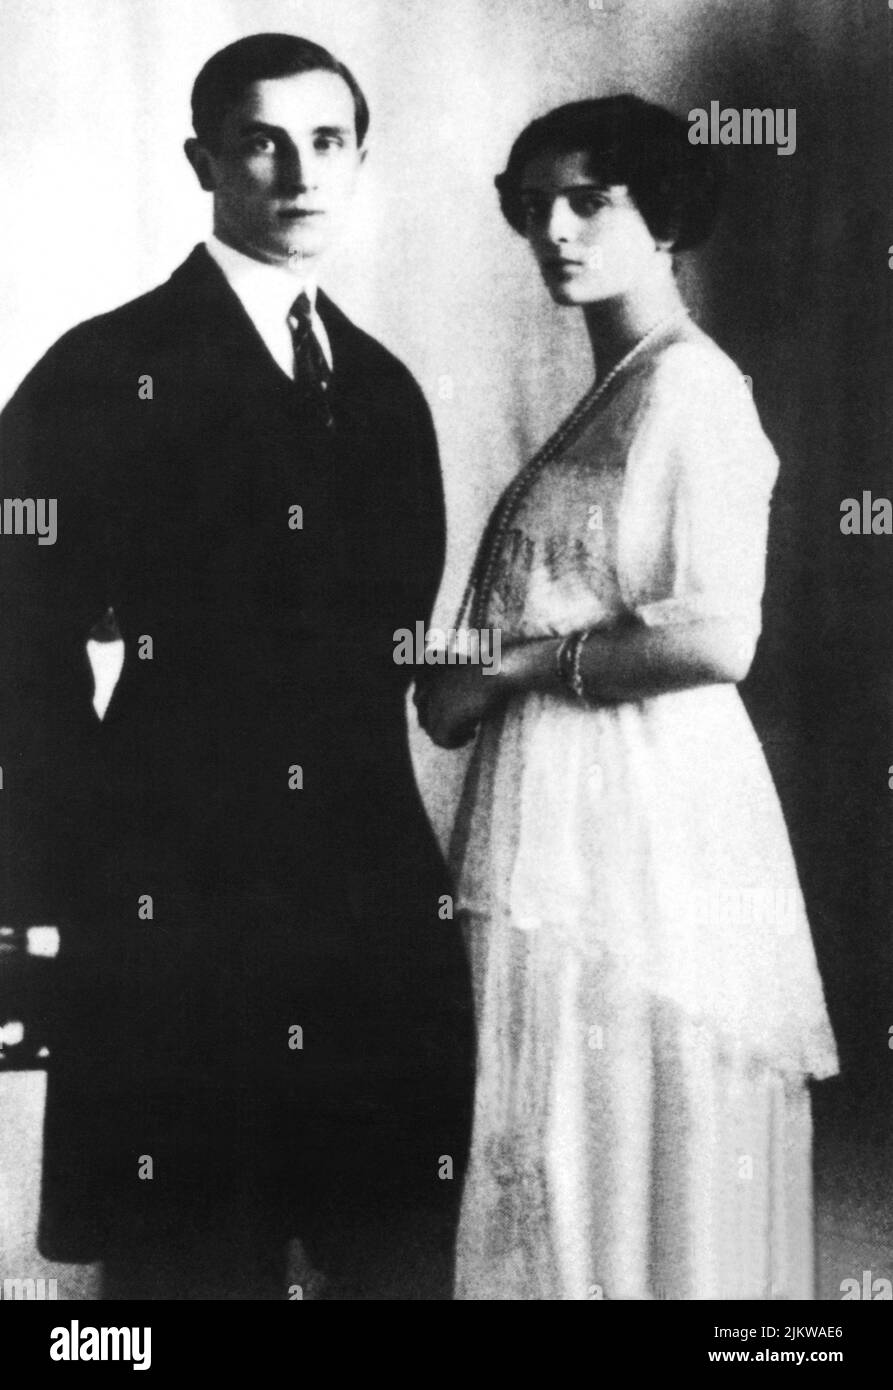 1913 : il principe russo FELIX YOUSSOUPOV (1887 - 1967 ) nella foto di fidanzamento con la sua futura moglie Princesse IRINA ALEXANDROVNA . Youssopov fu l'assassino del celebre sacerdote russo Grigorij Efimovic RASPUTIN ( 1871 - 1916 ) - ritratto - ritratto - nobile russo - nobiltà russa - RUSSIA - nobiltà - royalty - RASPOUTINE - costume - YOUSSOUPOFF ---- Archivio GBB Foto Stock